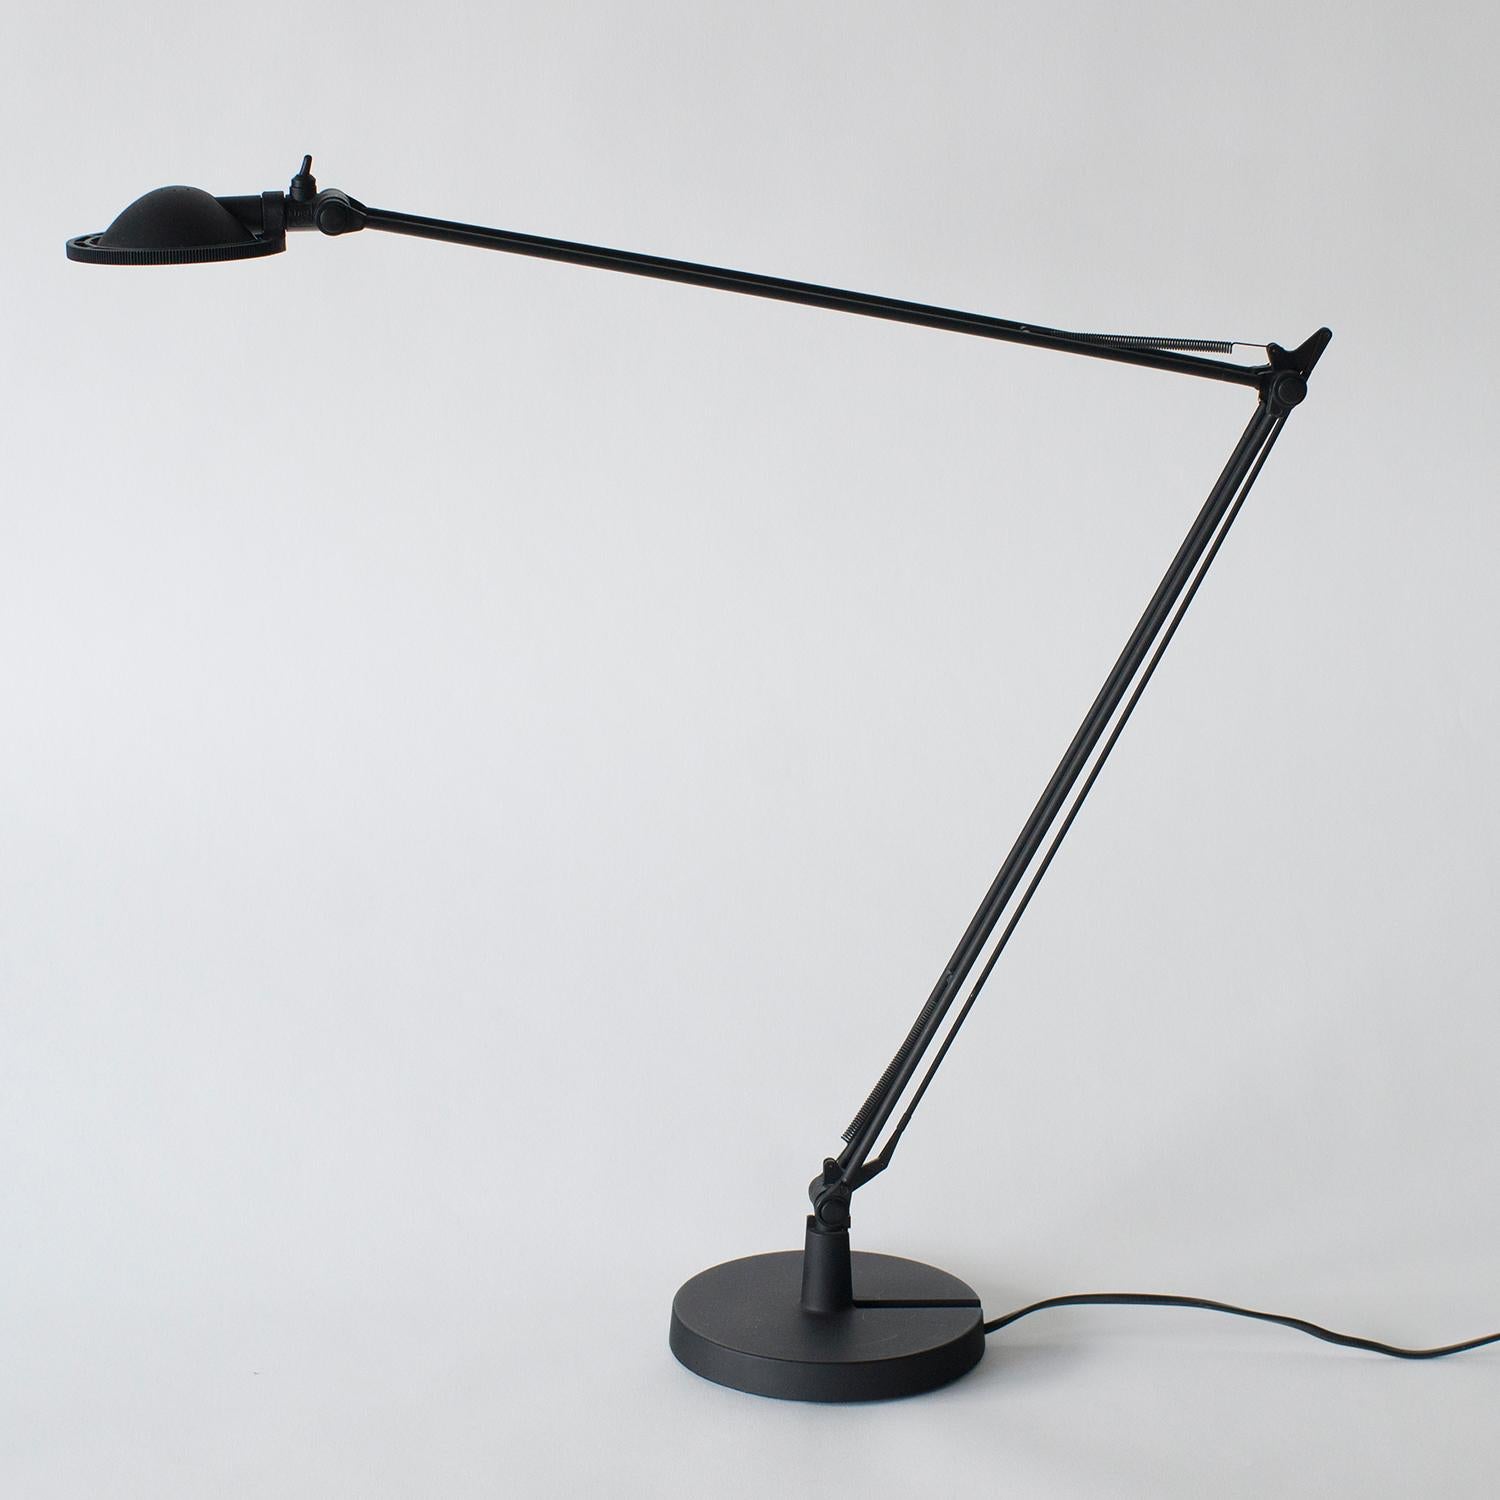 Late 20th Century Berenice Alberto Meda Paolo Rizatto Desk Lamp 1980s Style Postmodern